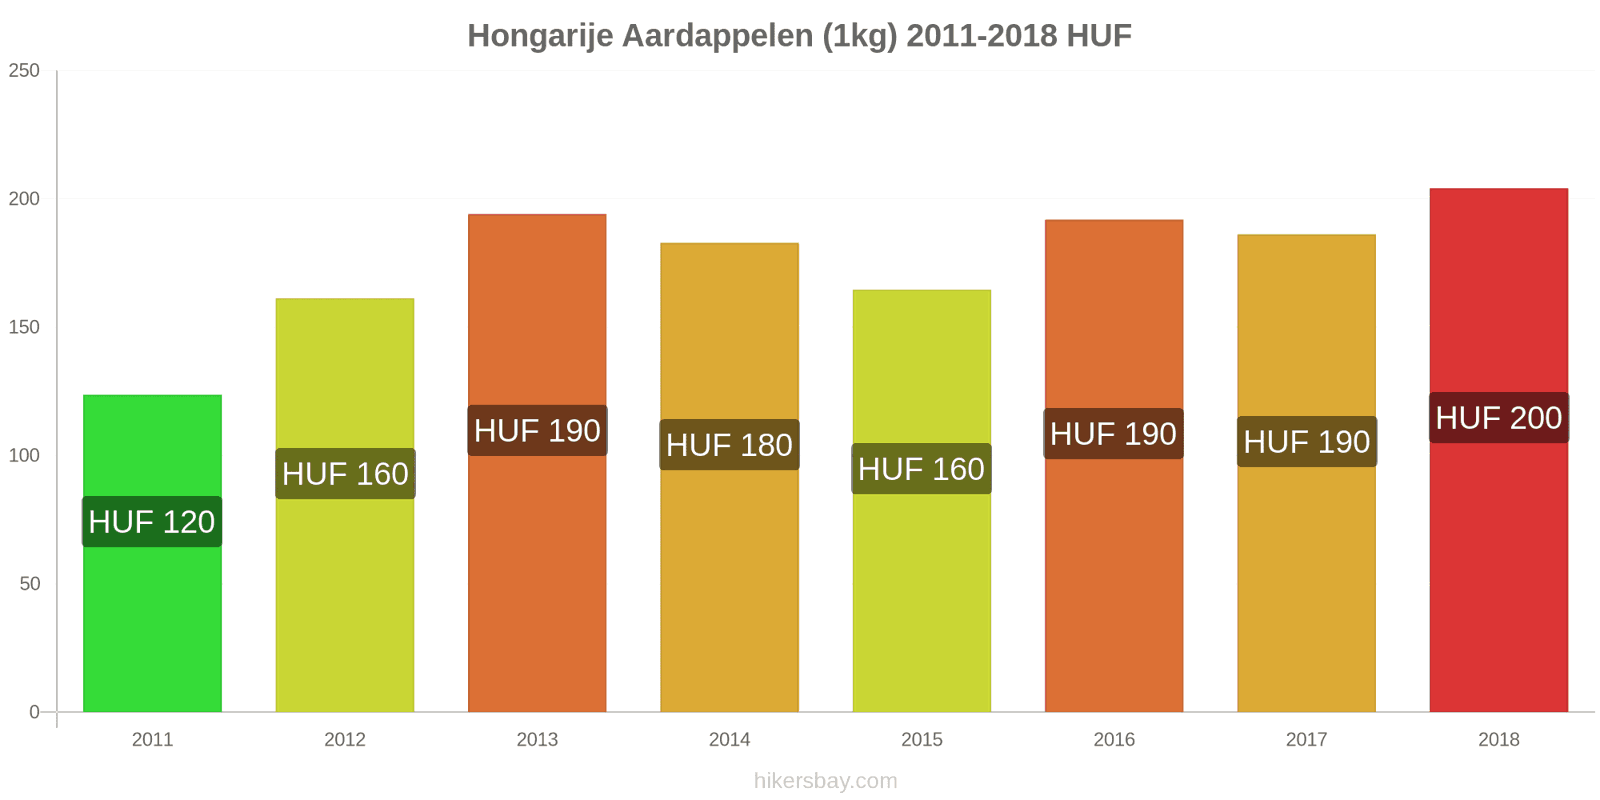 Hongarije prijswijzigingen Aardappelen (1kg) hikersbay.com